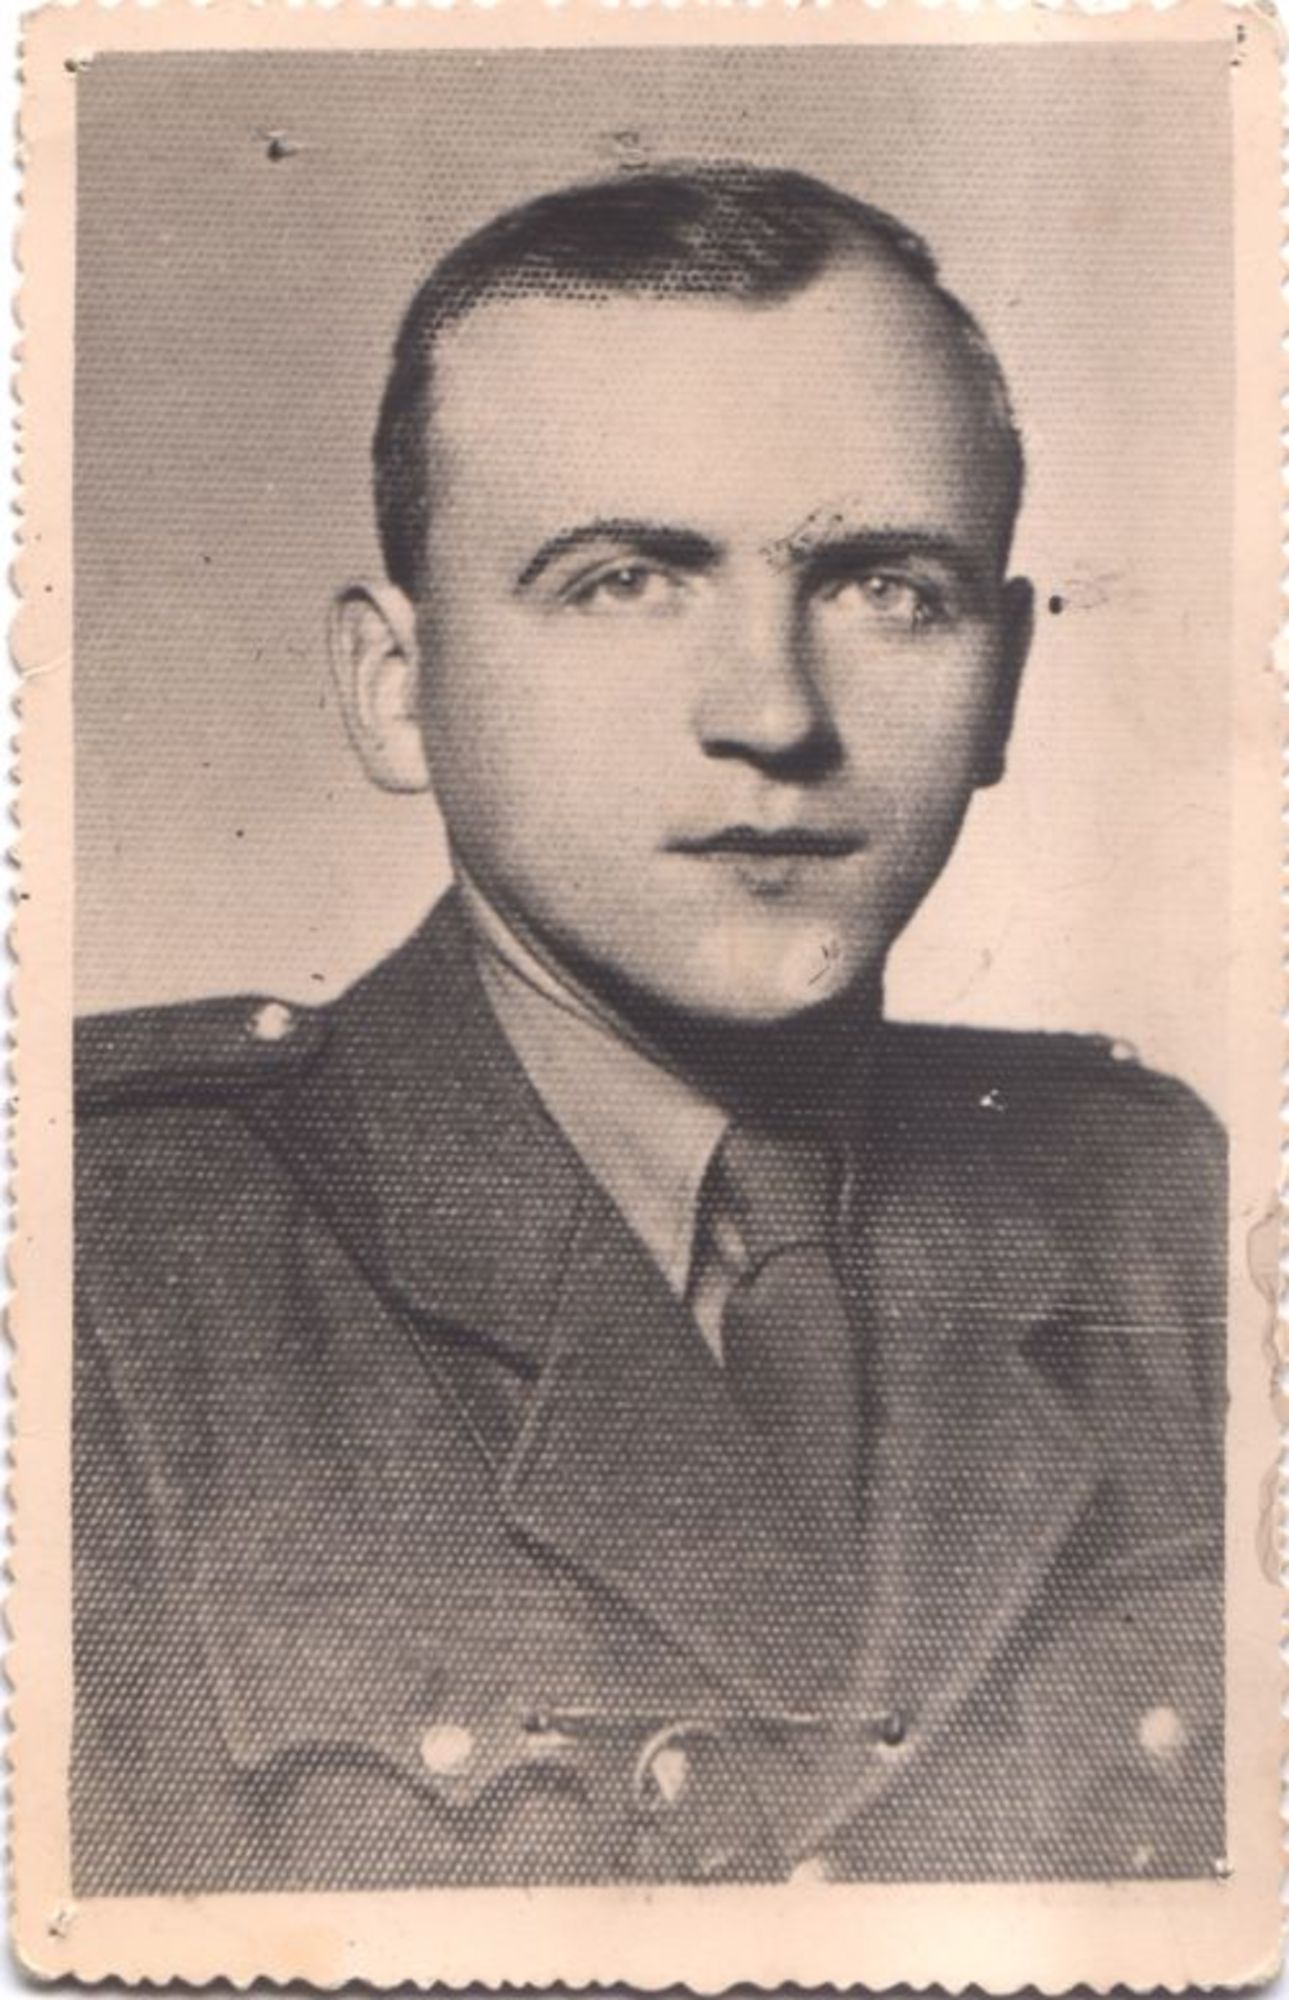 In Kezmarok, 25th March 1945